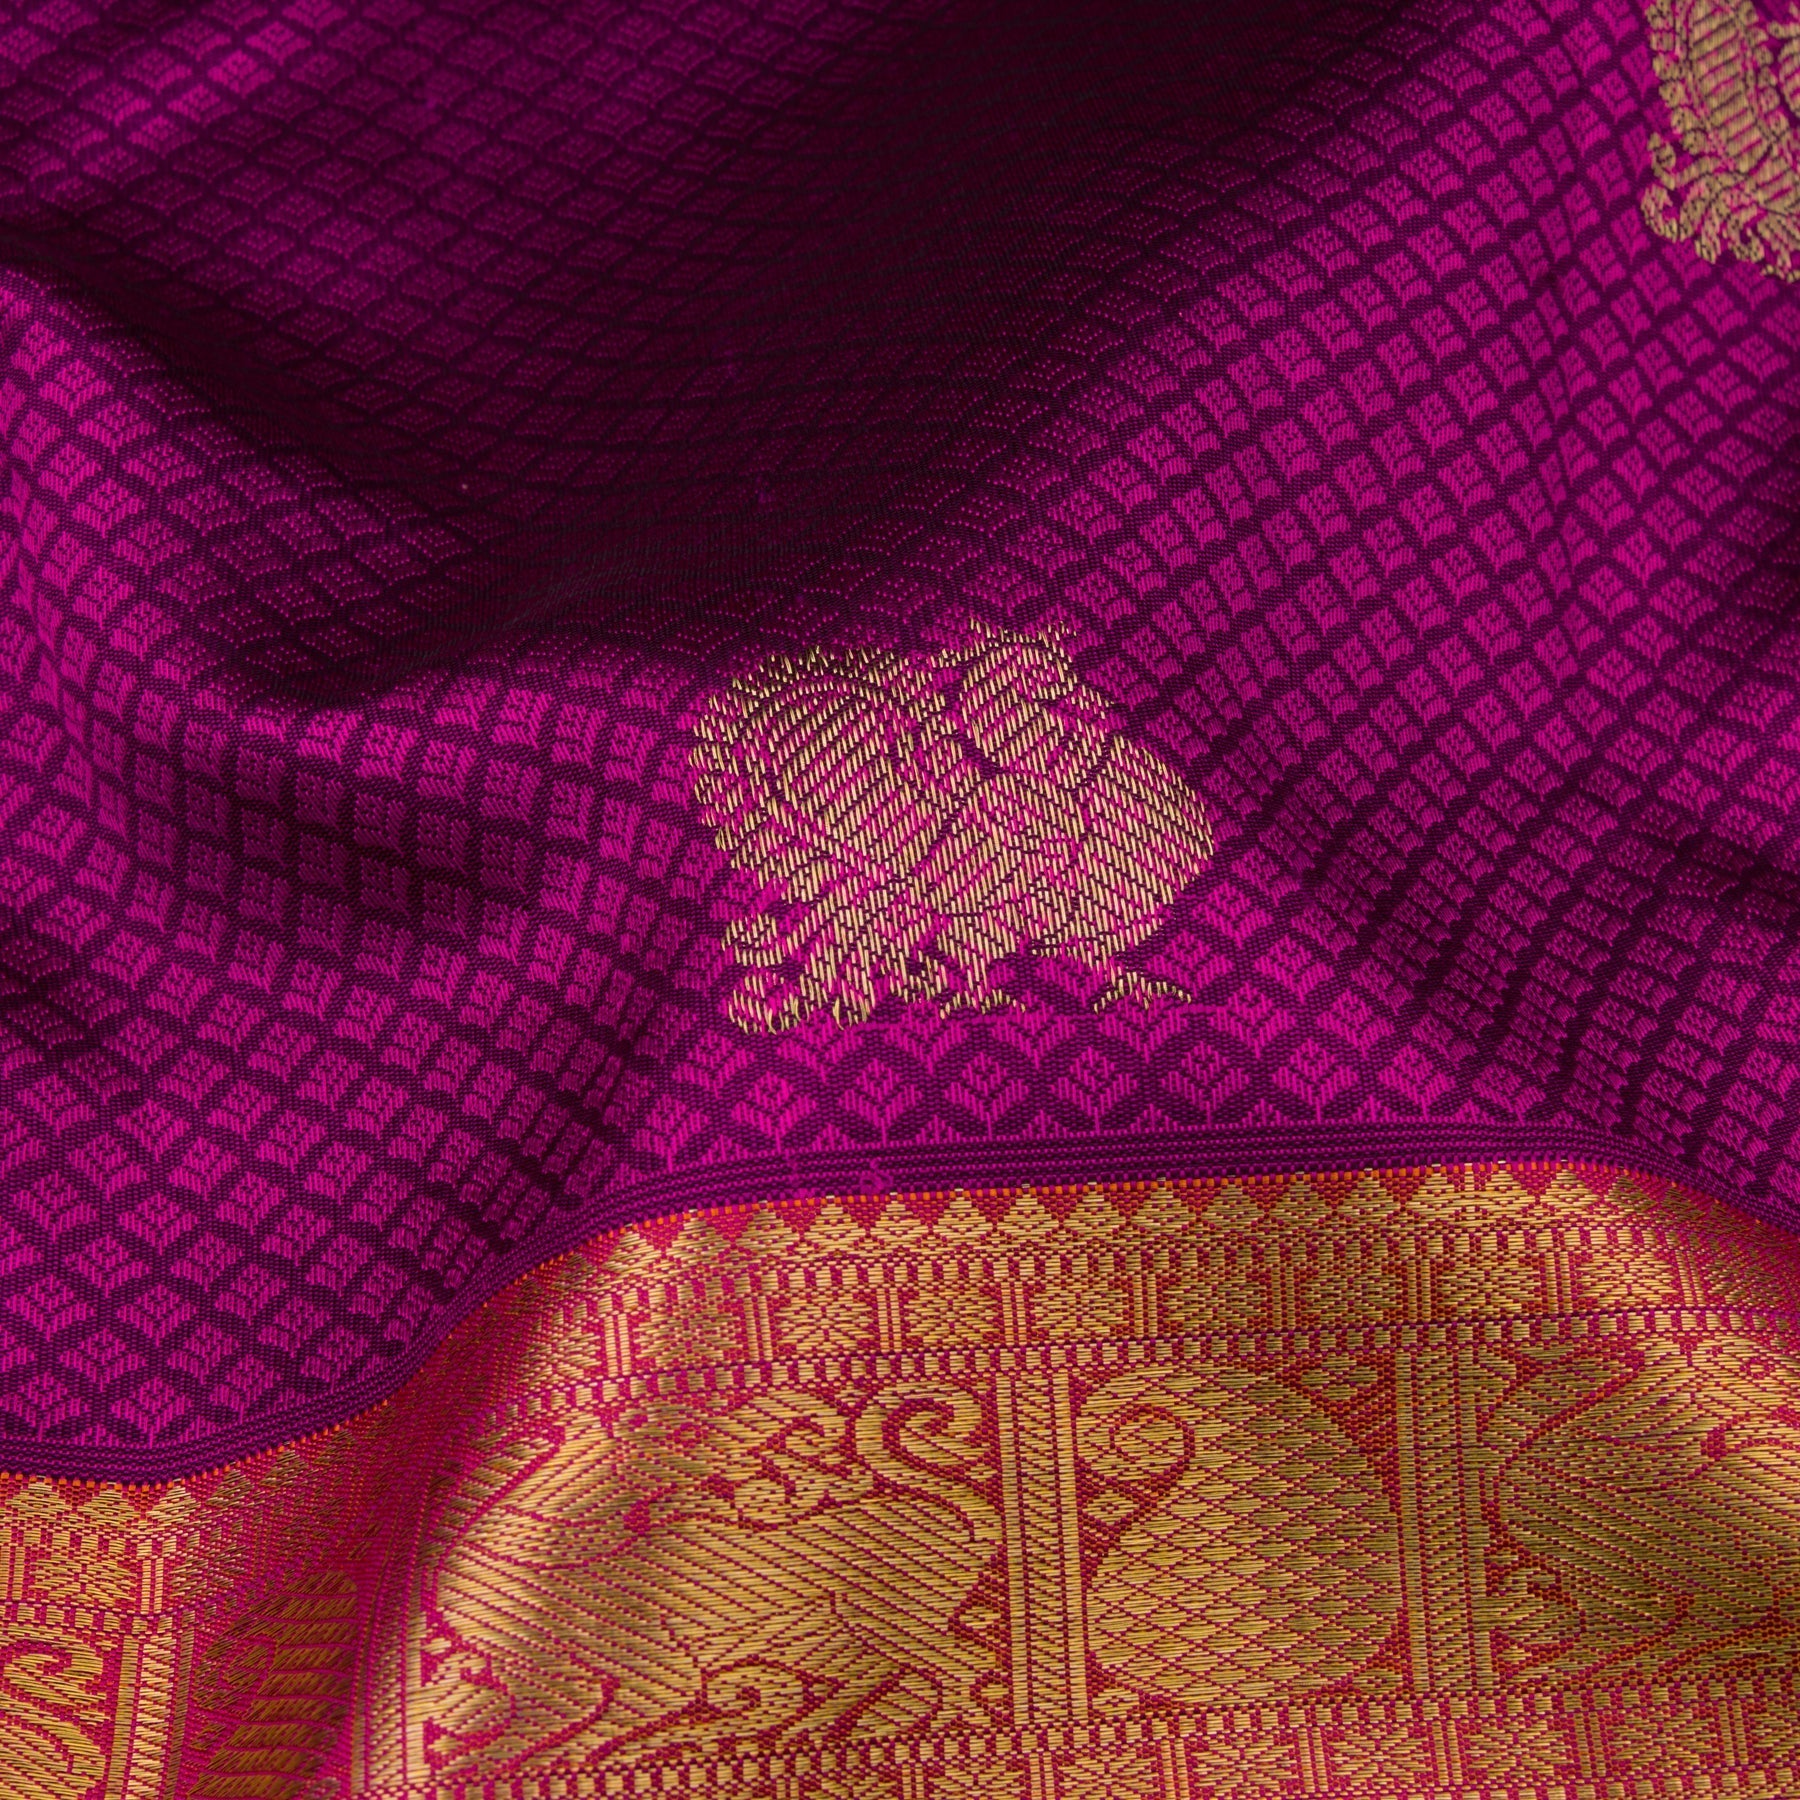 Kanakavalli Kanjivaram Silk Sari 21-599-HS001-06401 - Fabric View